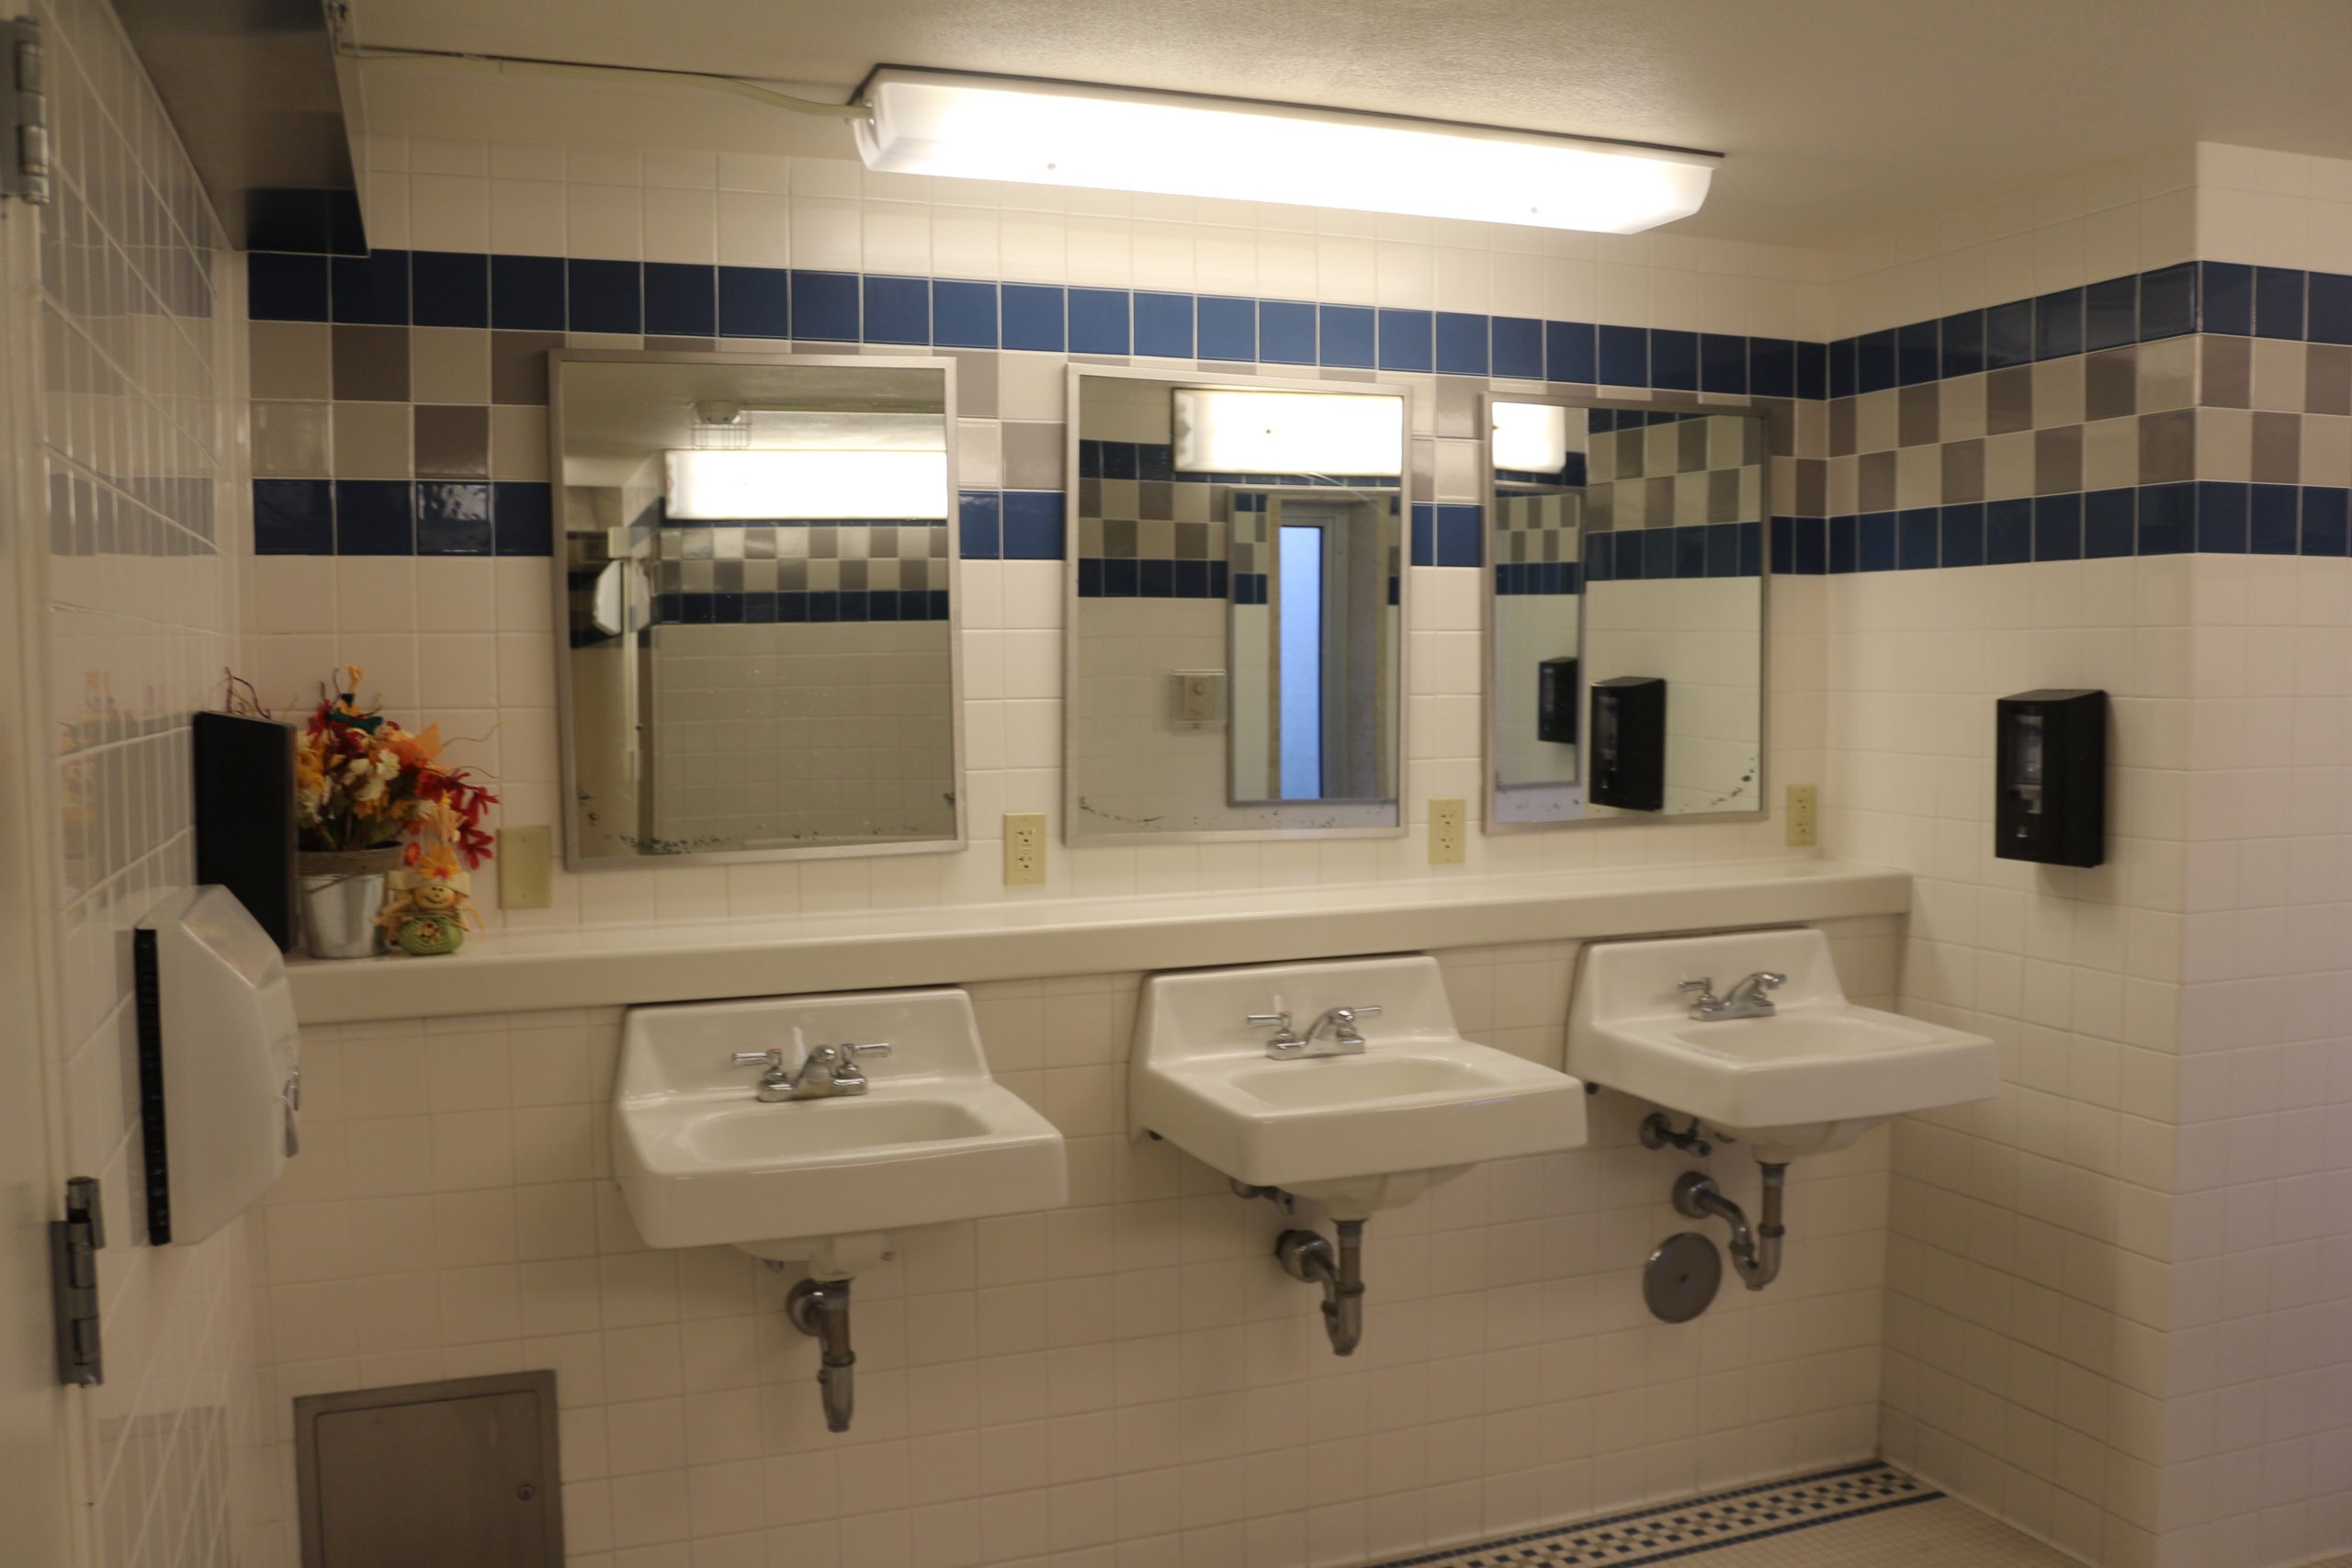 Shared floor bathroom showing three sinks